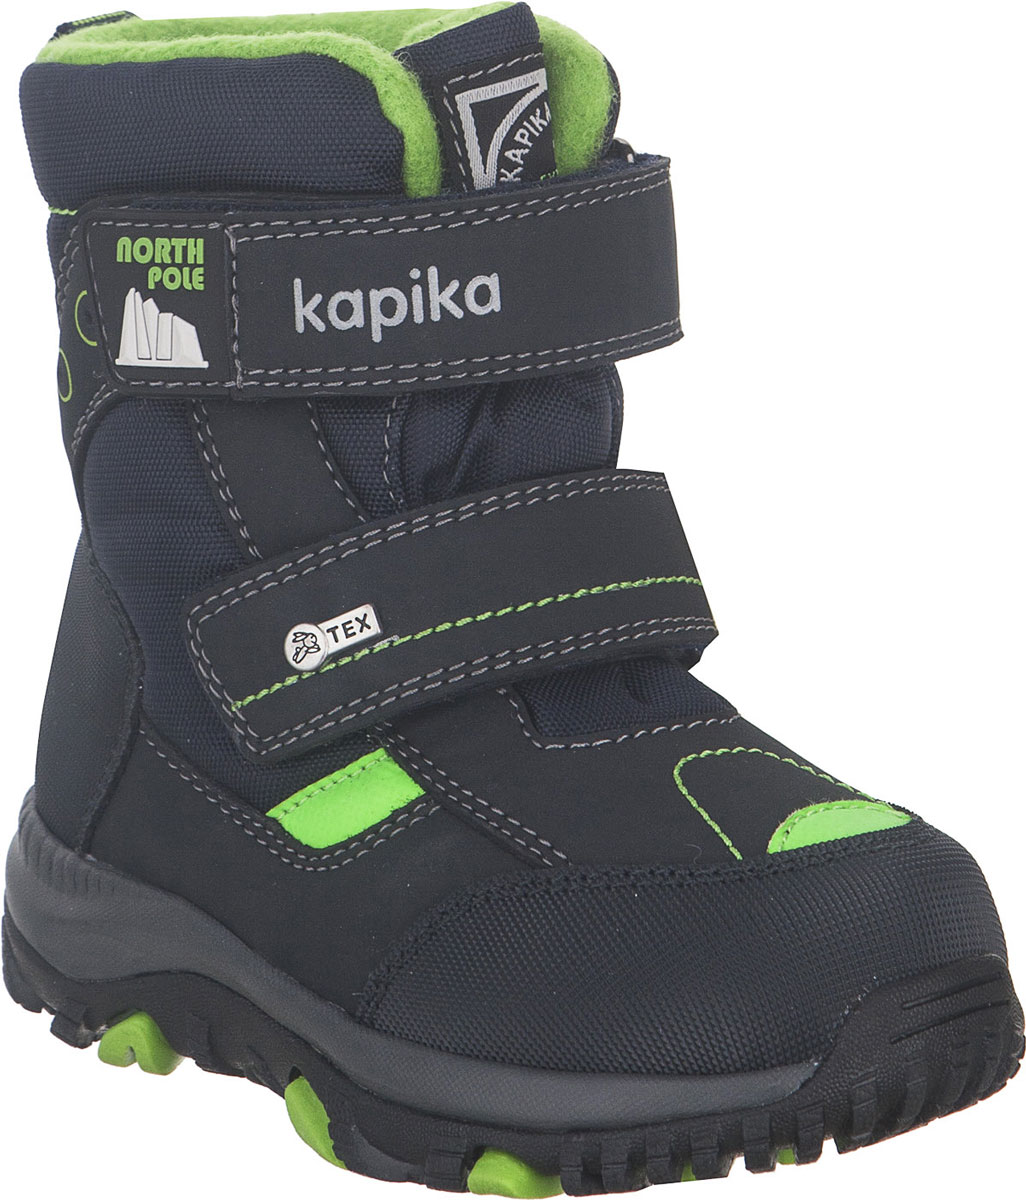 Ботинки для мальчика Kapika, цвет: темно-синий, салатовый. 41228-2. Размер 25